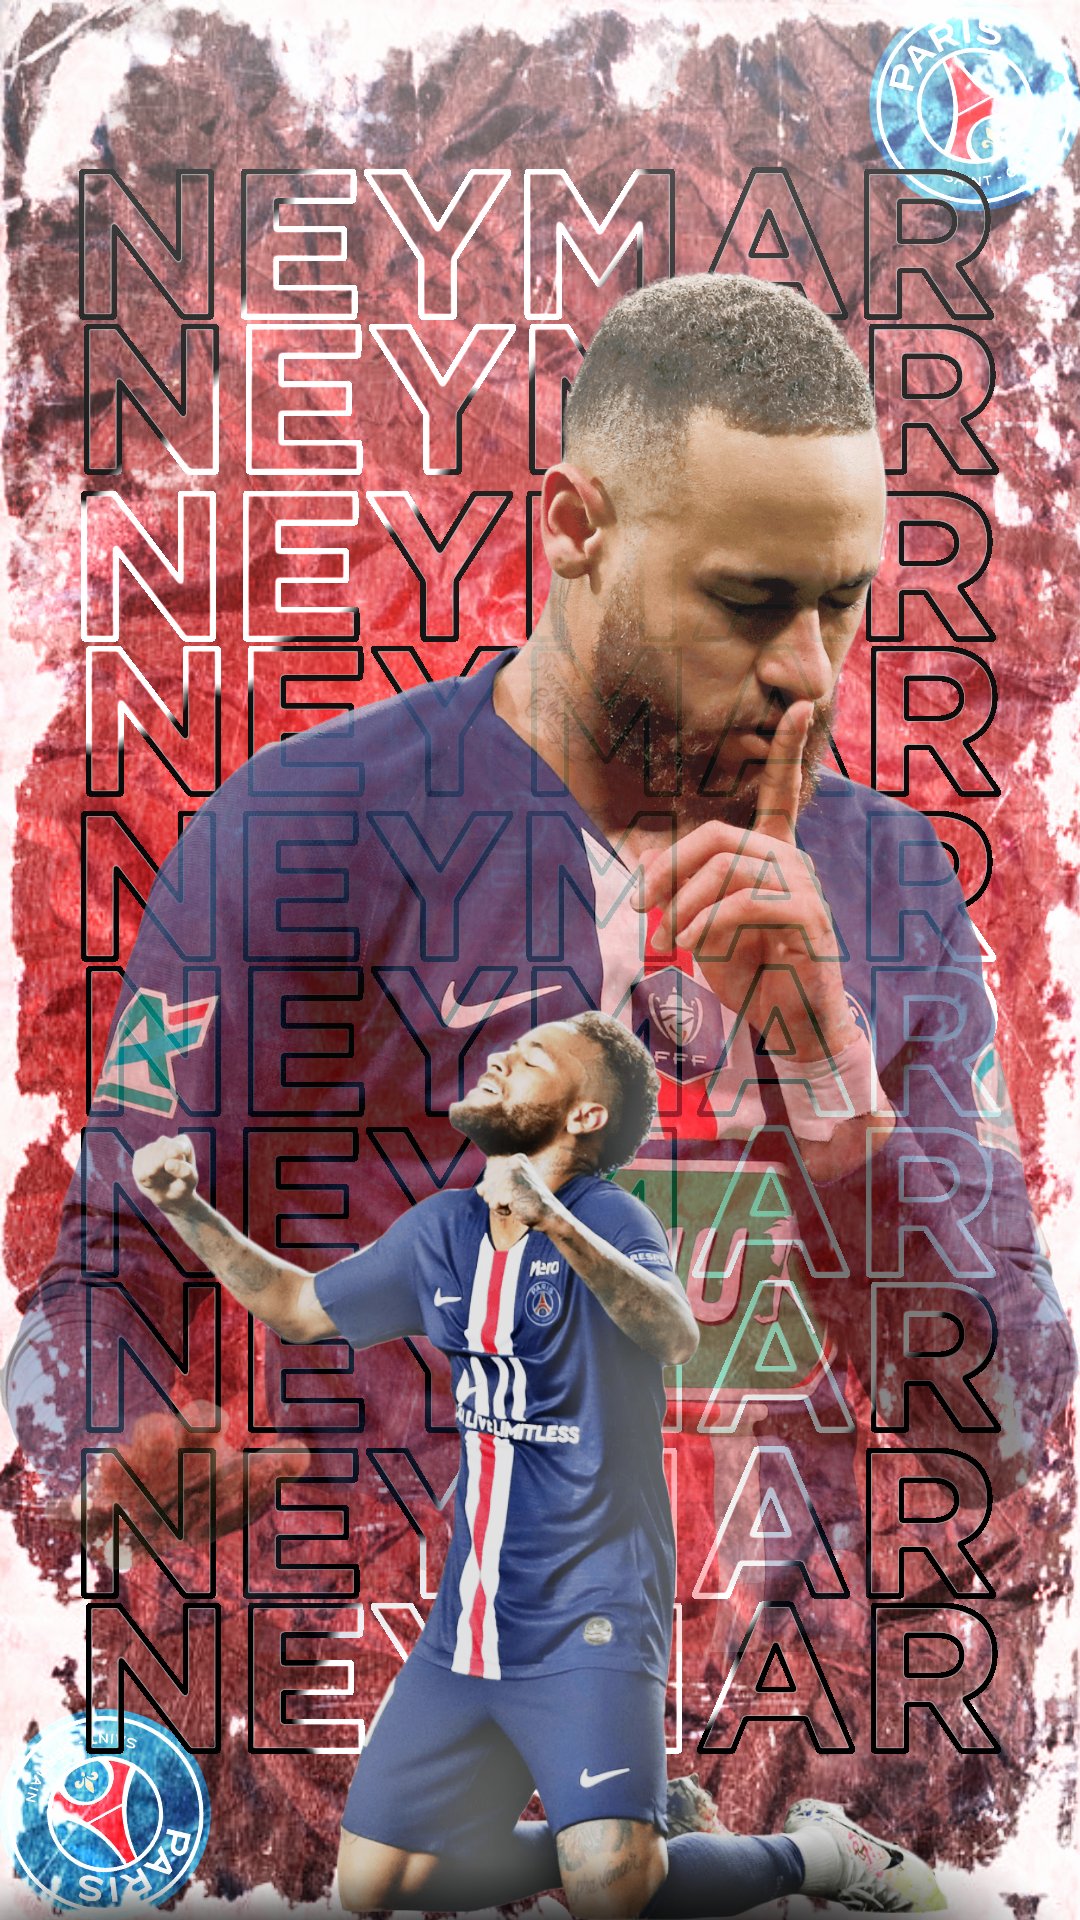 Neymar HD 2021 wallpaper